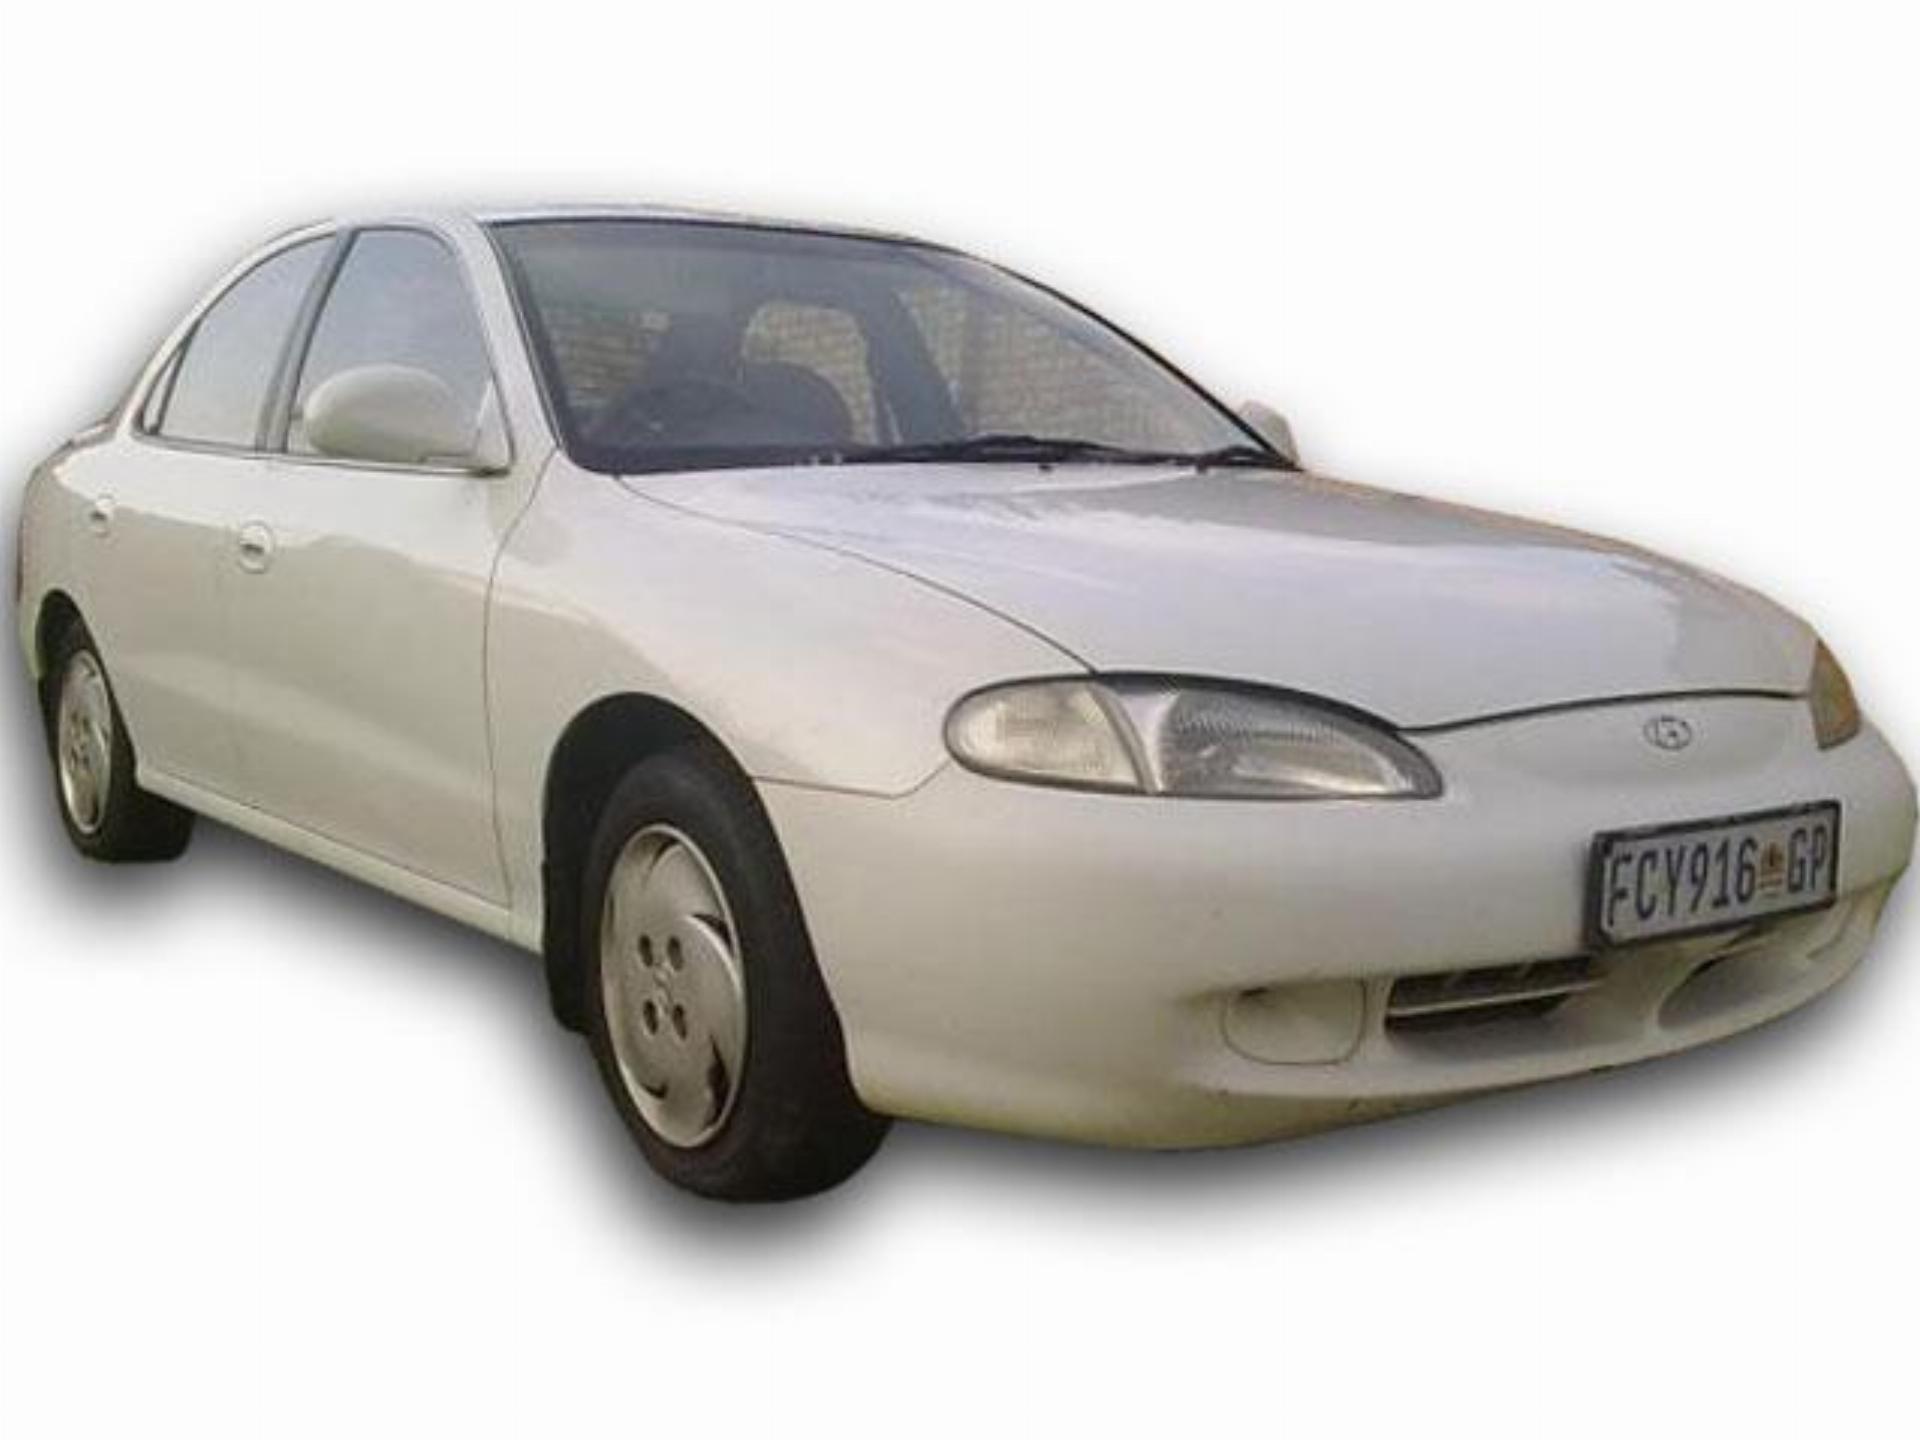 Used Hyundai Elantra 1.6 GLS 1997 on auction PV1002223